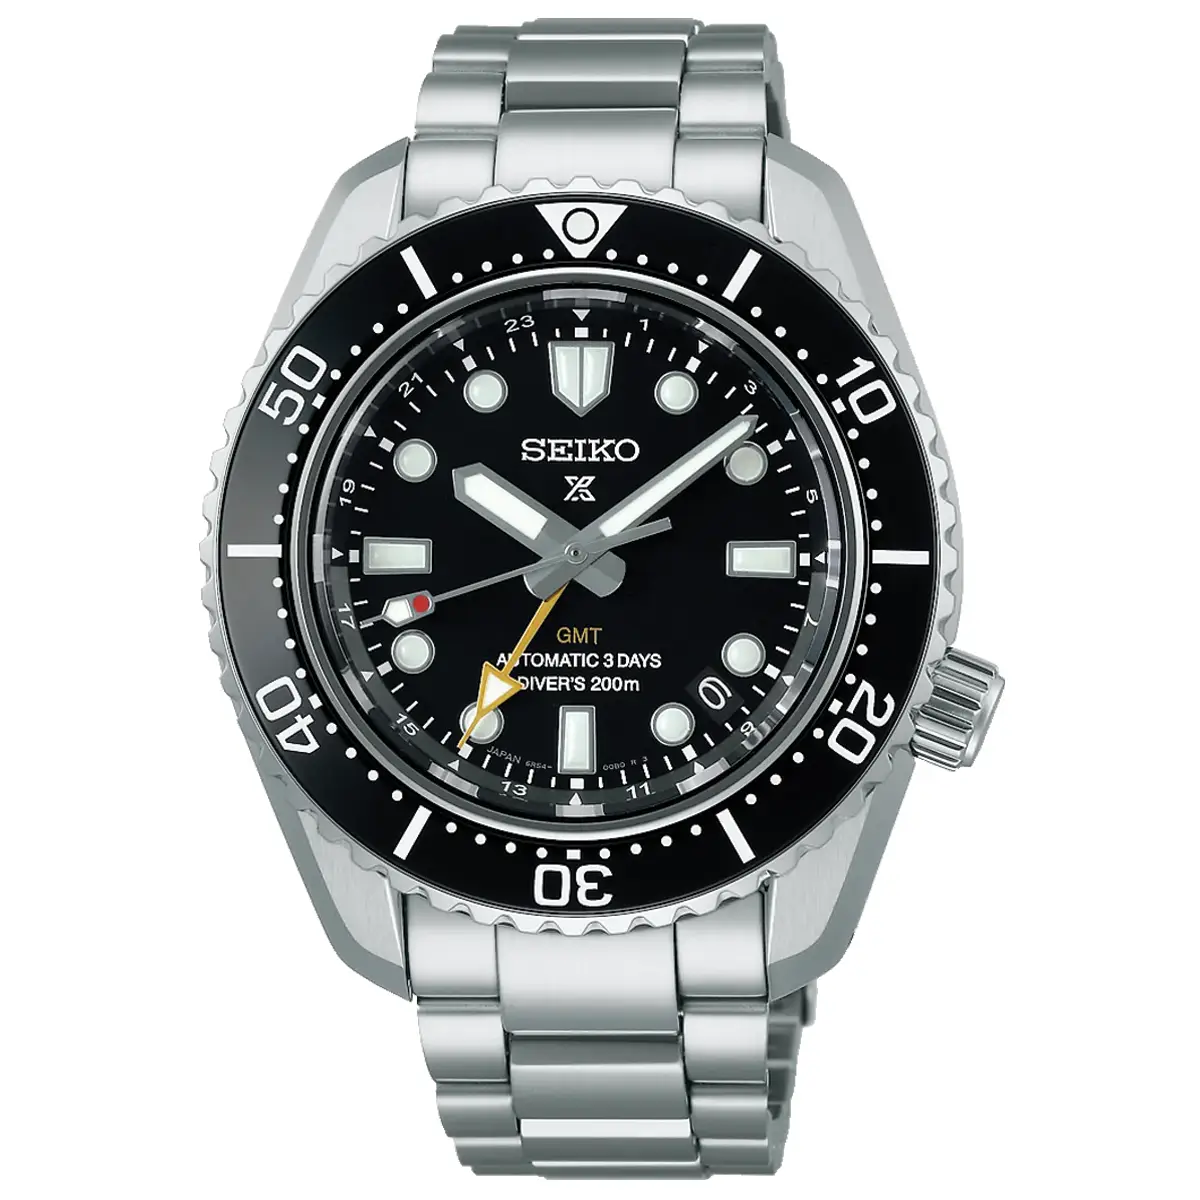 Đồng hồ Seiko Prospex 1968 Diver Scuba GMT SBEJ011 (SPB383) mặt số màu đen. Dây đeo bằng thép. Thân vỏ bằng thép.